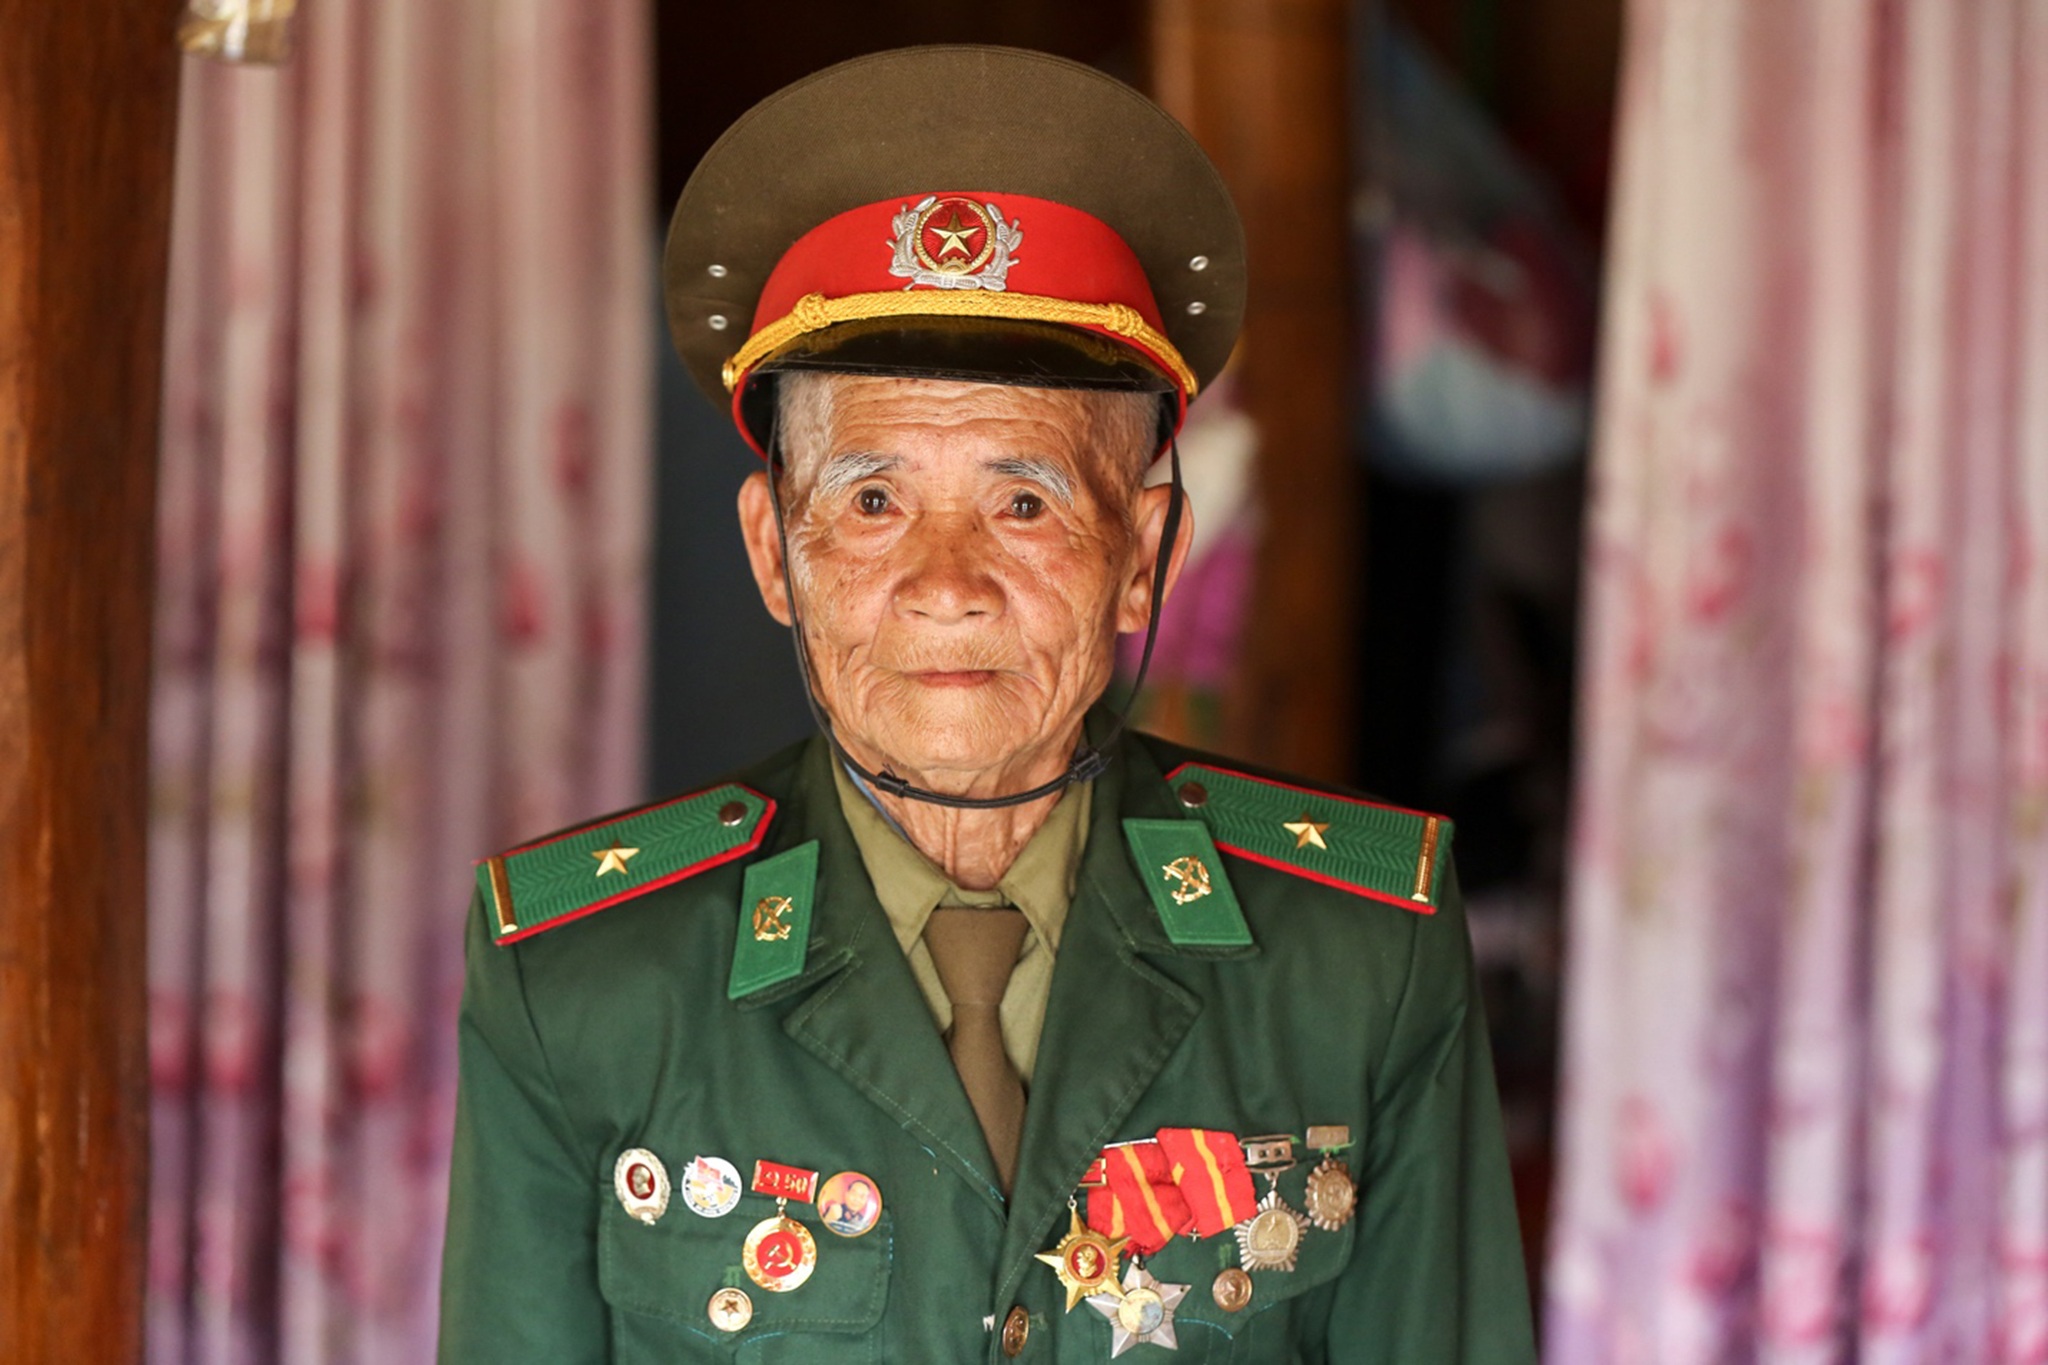 Sau hàng chục năm, ông Păn vẫn giữa lại cho mình bộ quân phục và những chiếc huy hiệu quý giá của một thời hoa lửa. (Ảnh: Lê Minh Sơn/Vietnam+)